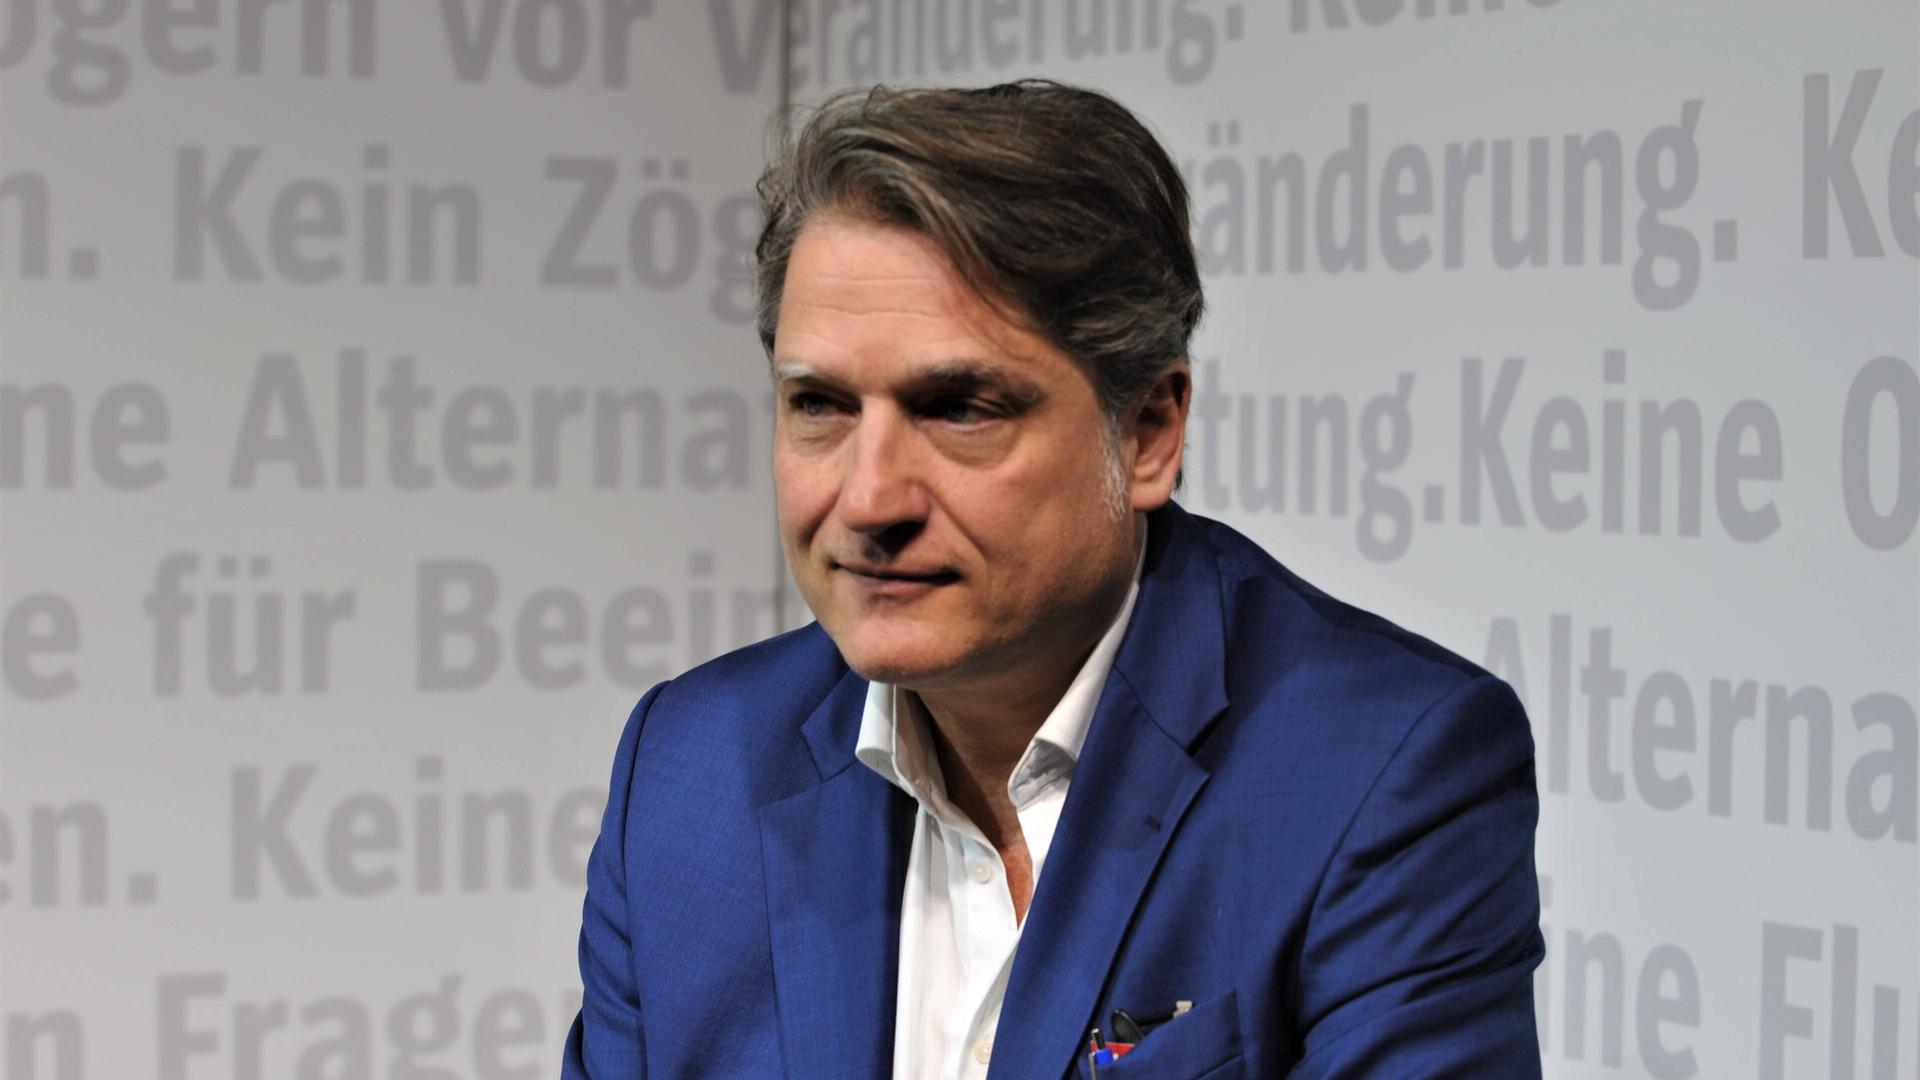 Porträtaufnahme der Journalisten und Autors Jakob Augstein im weißen Hemd und mit blauem Jackett auf der Frankfurter Buchmesse 2019.